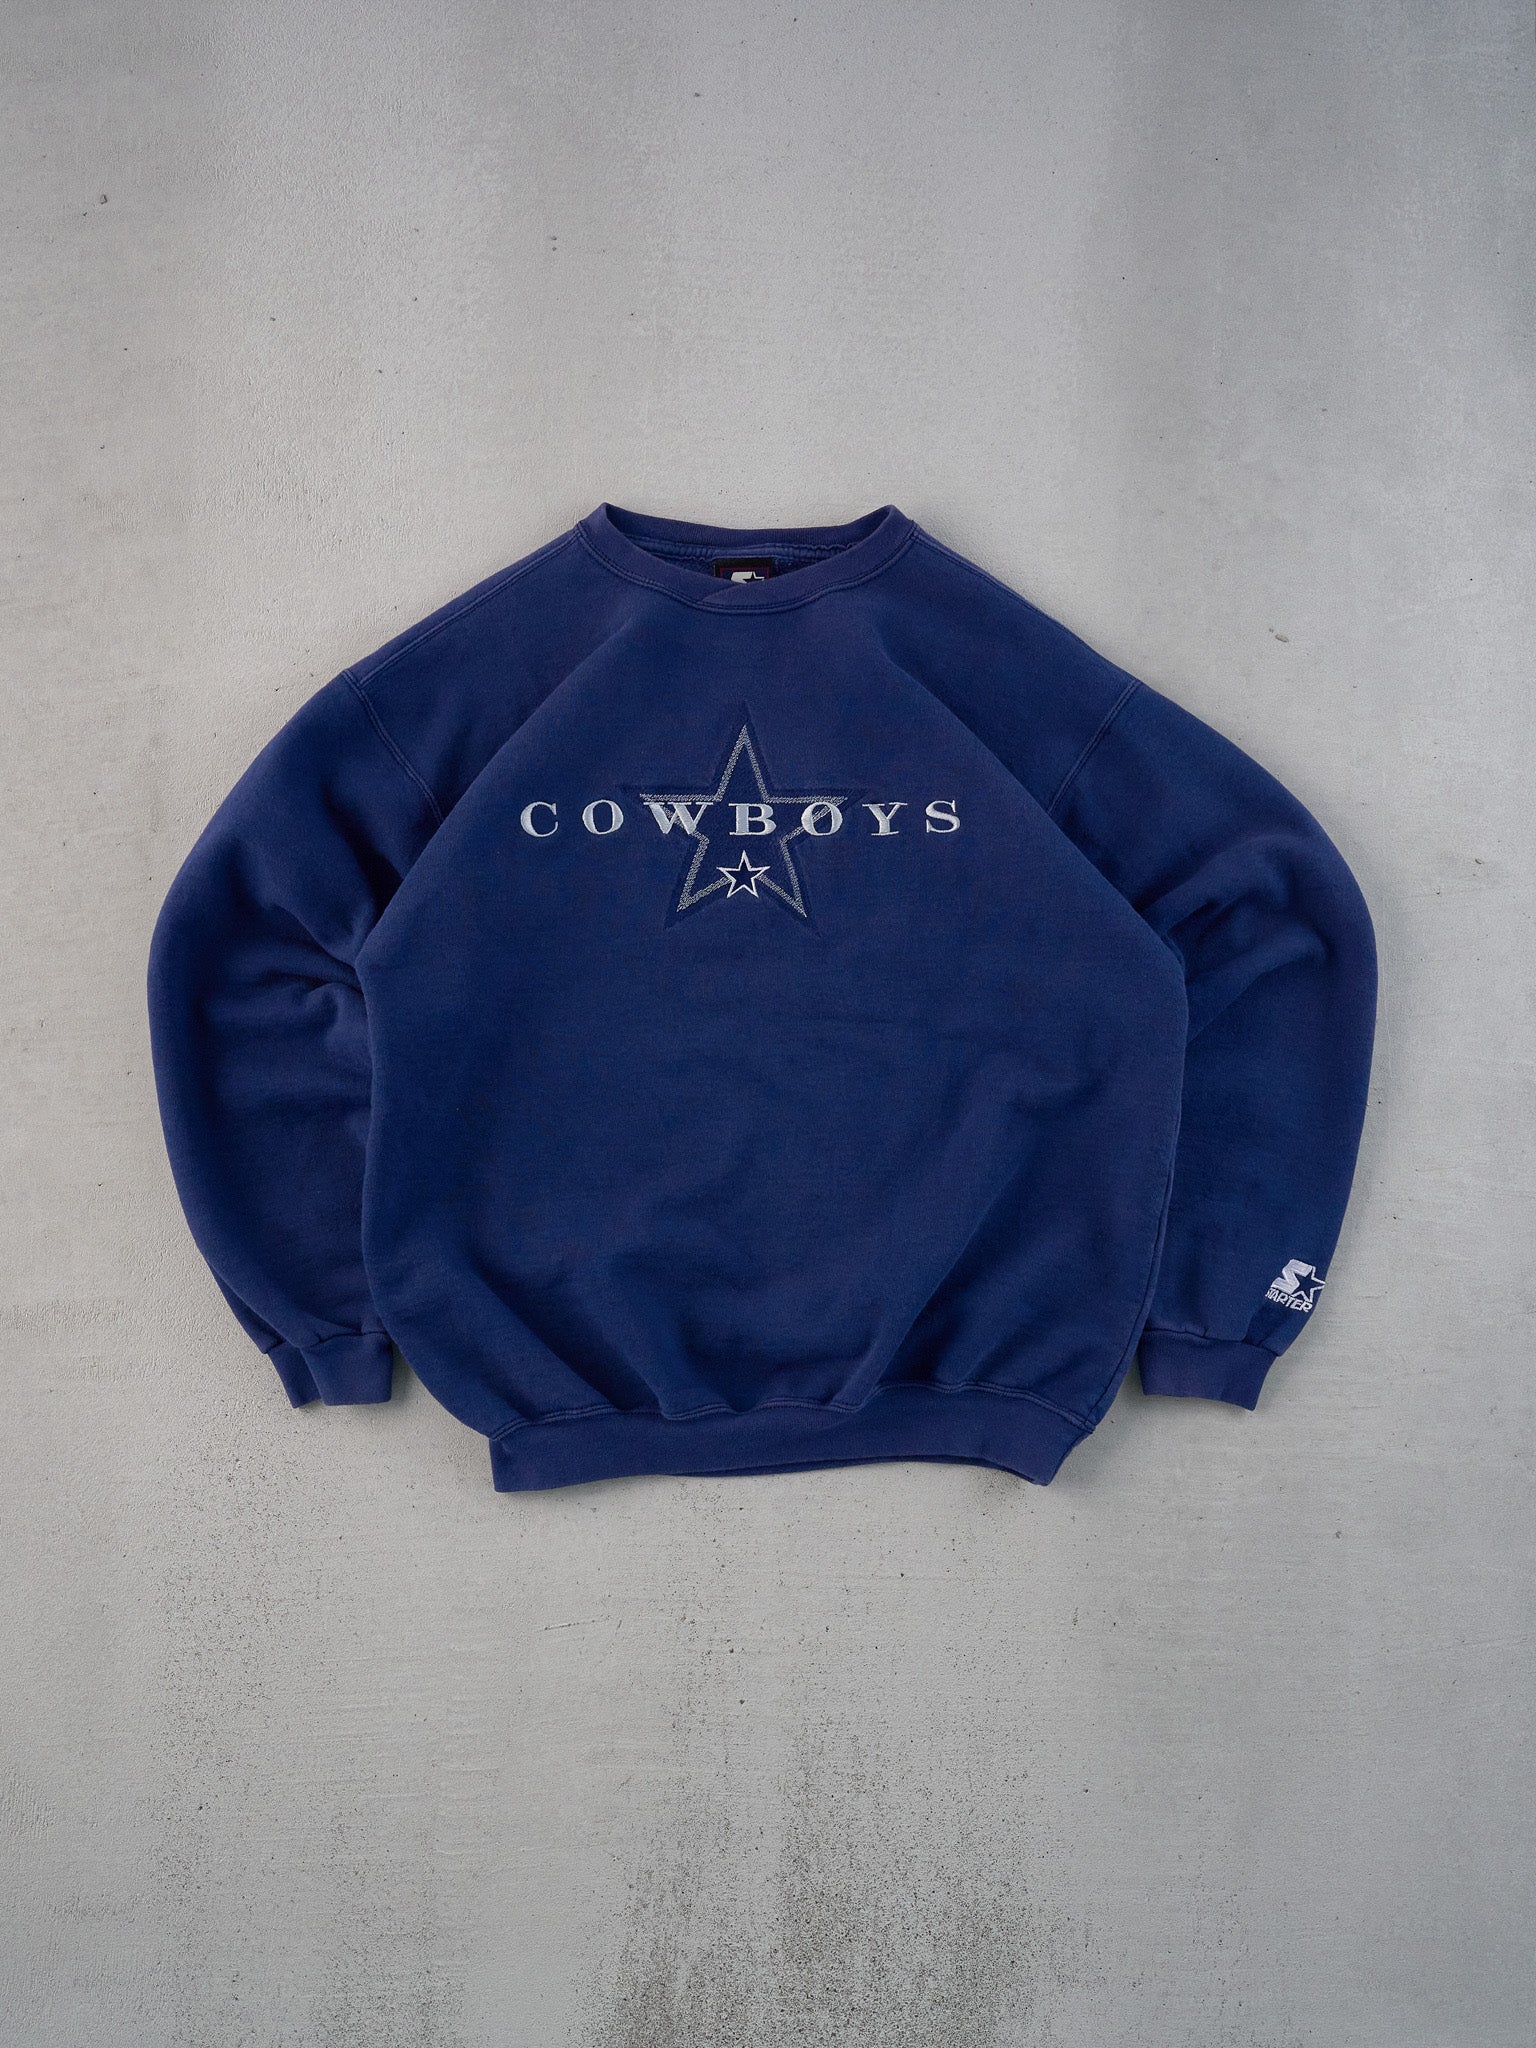 Vintage 90s Navy Blue Dallas Cowboys Starters Crewneck (M)